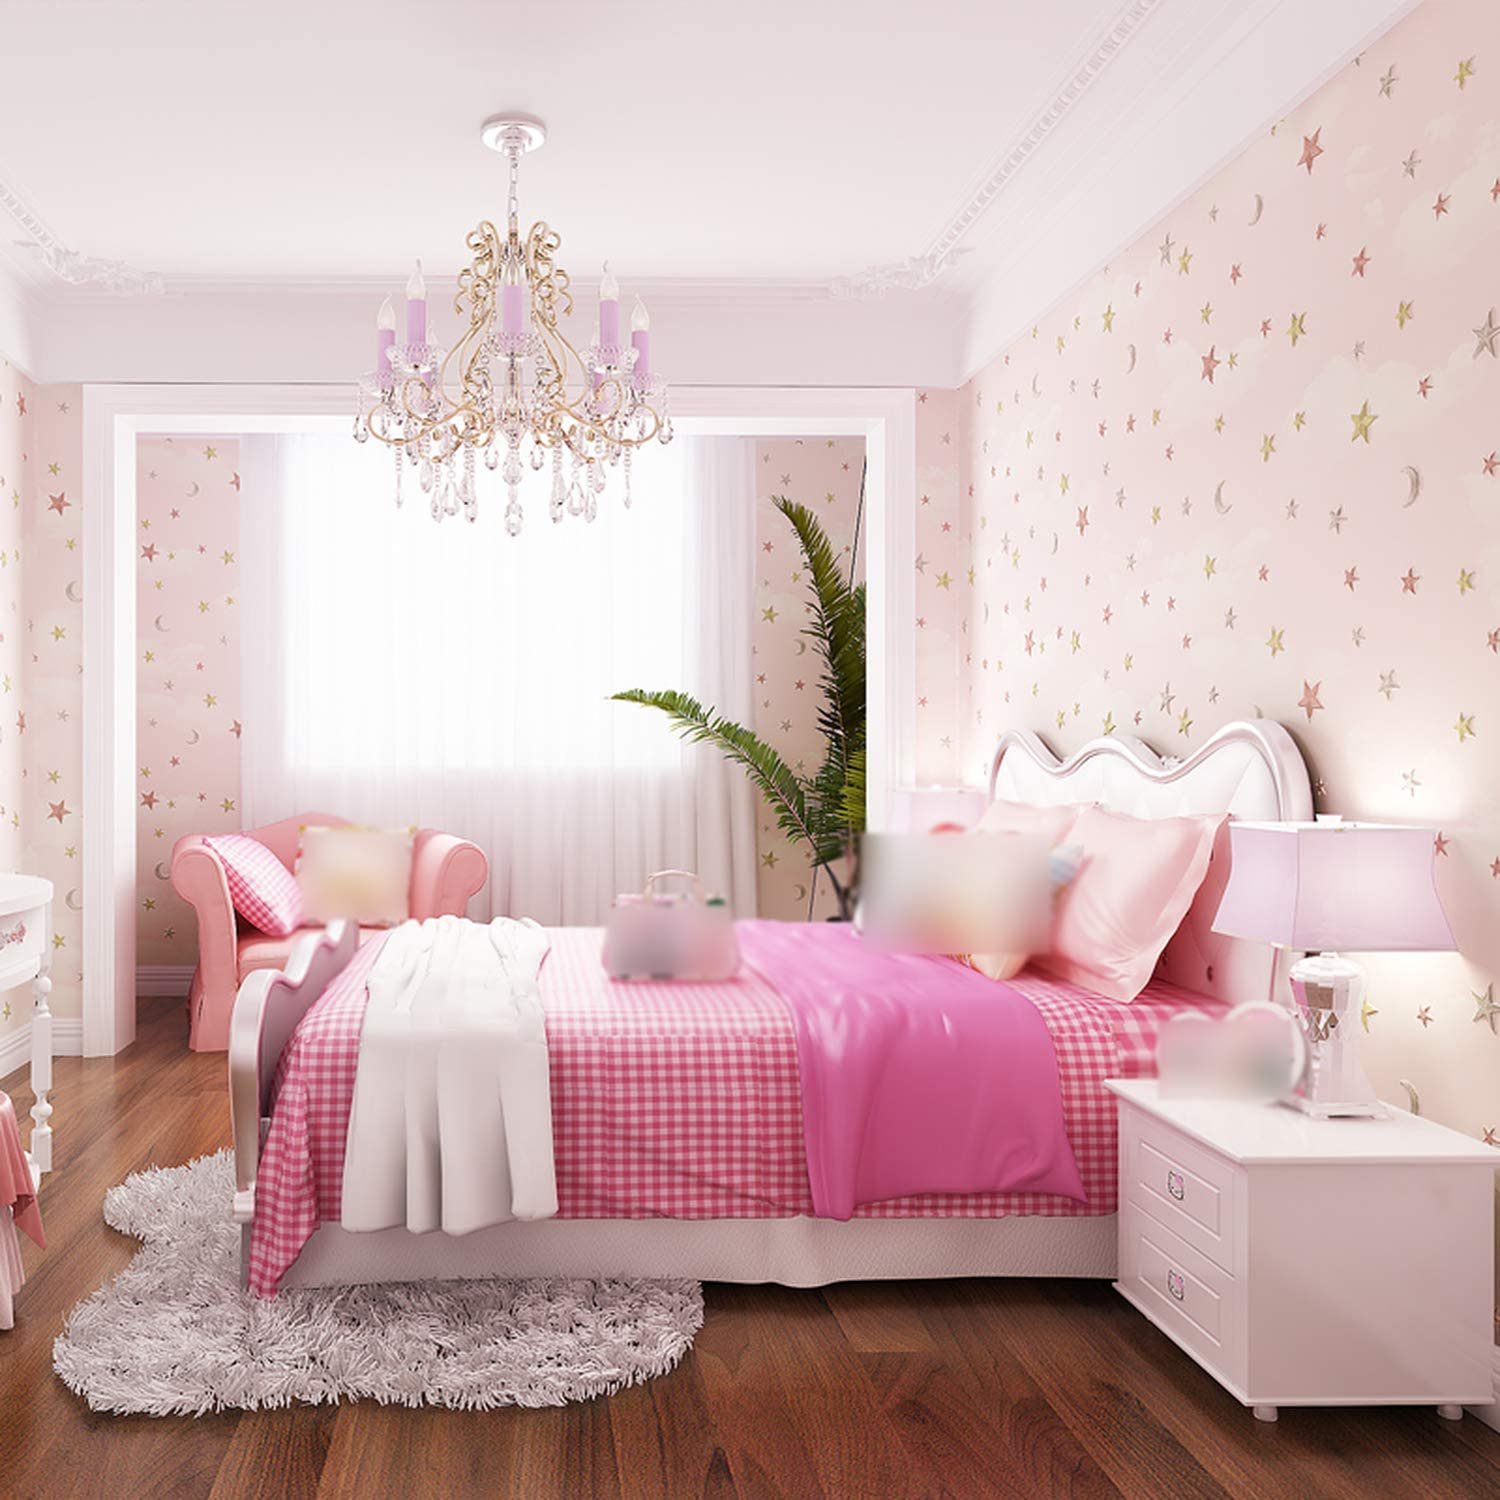 Комната в розовых тонах. Спальня для девочки в розовых тонах. Розовая комната для девочки. Комната для девочки розового цвета. Нежная детская комната для девочки.